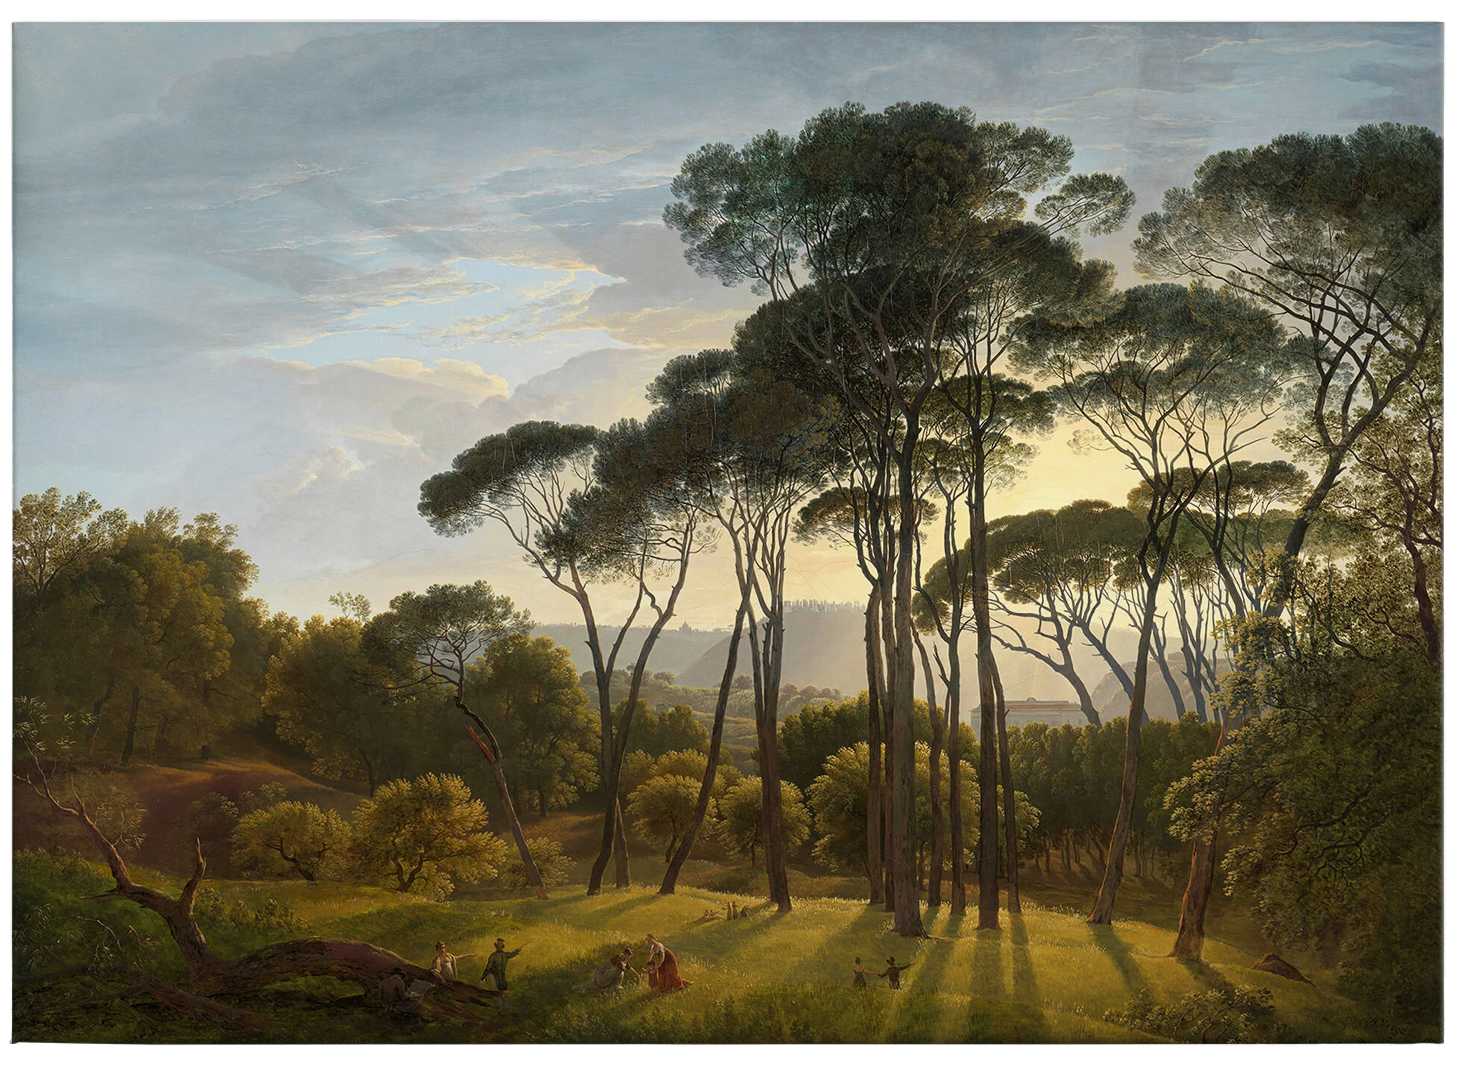             Gemälde Leinwandbild italienische Landschaft von Voogd – 0,70 m x 0,50 m
        